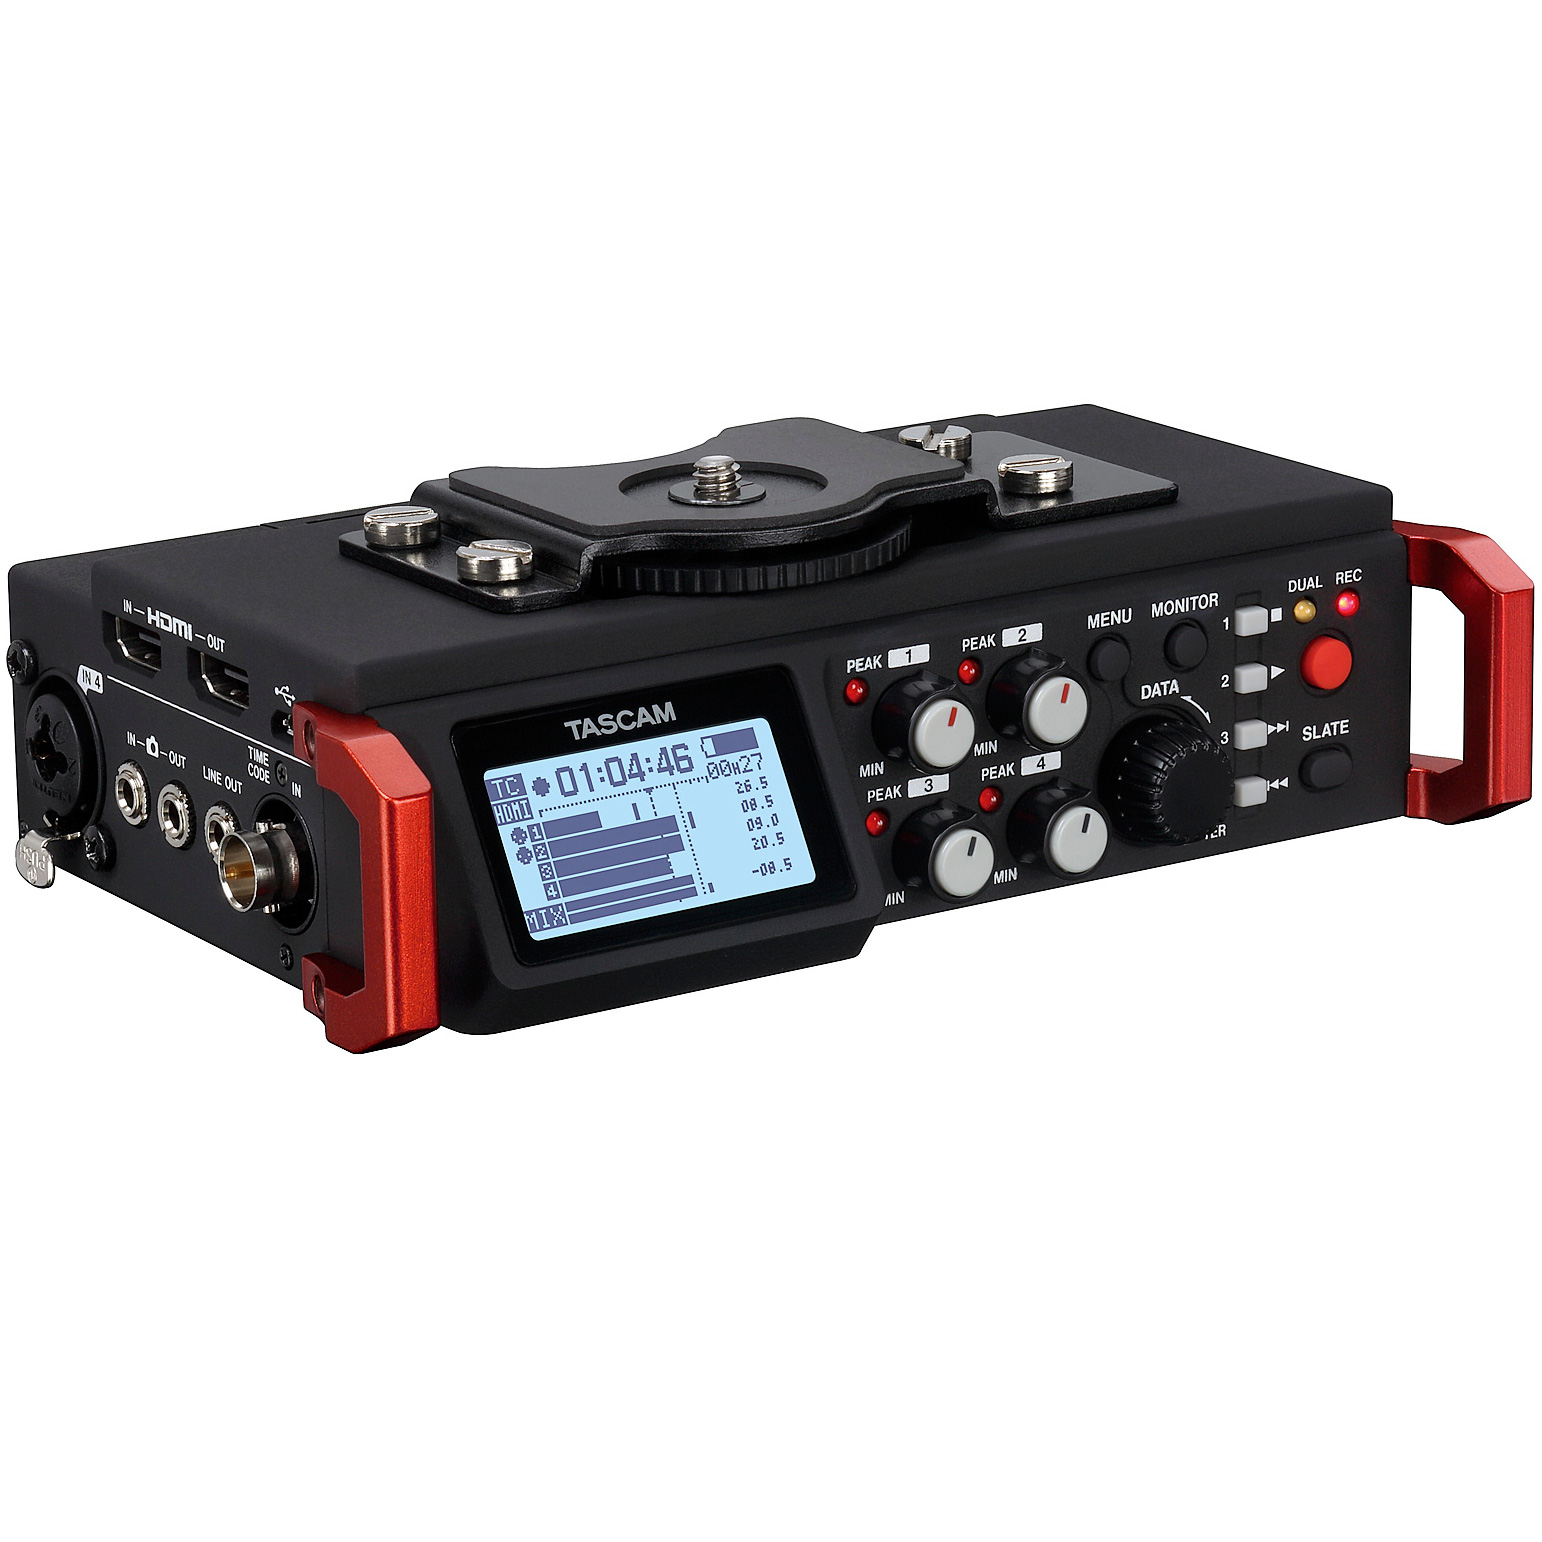 Tascam DR-701D szeciokanaowy rejestrator audio do lustrzanek i bezlusterkowcw - Dostawa GRATIS!